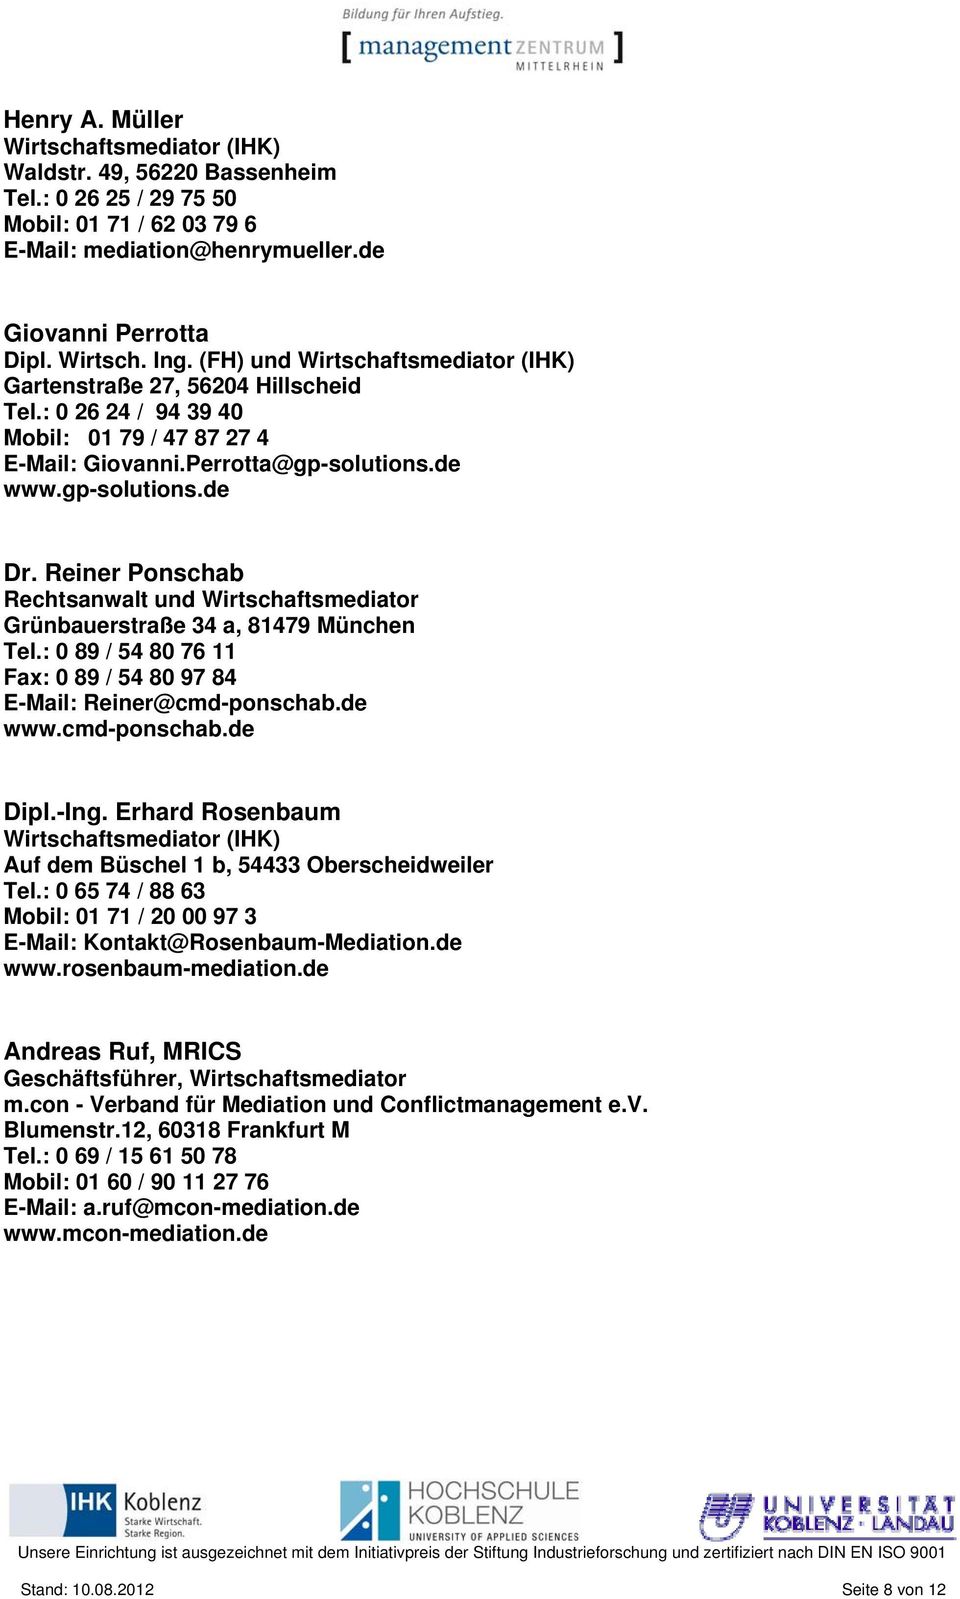 Reiner Ponschab Rechtsanwalt und Wirtschaftsmediator Grünbauerstraße 34 a, 81479 München Tel.: 0 89 / 54 80 76 11 Fax: 0 89 / 54 80 97 84 E-Mail: Reiner@cmd-ponschab.de www.cmd-ponschab.de Dipl.-Ing.